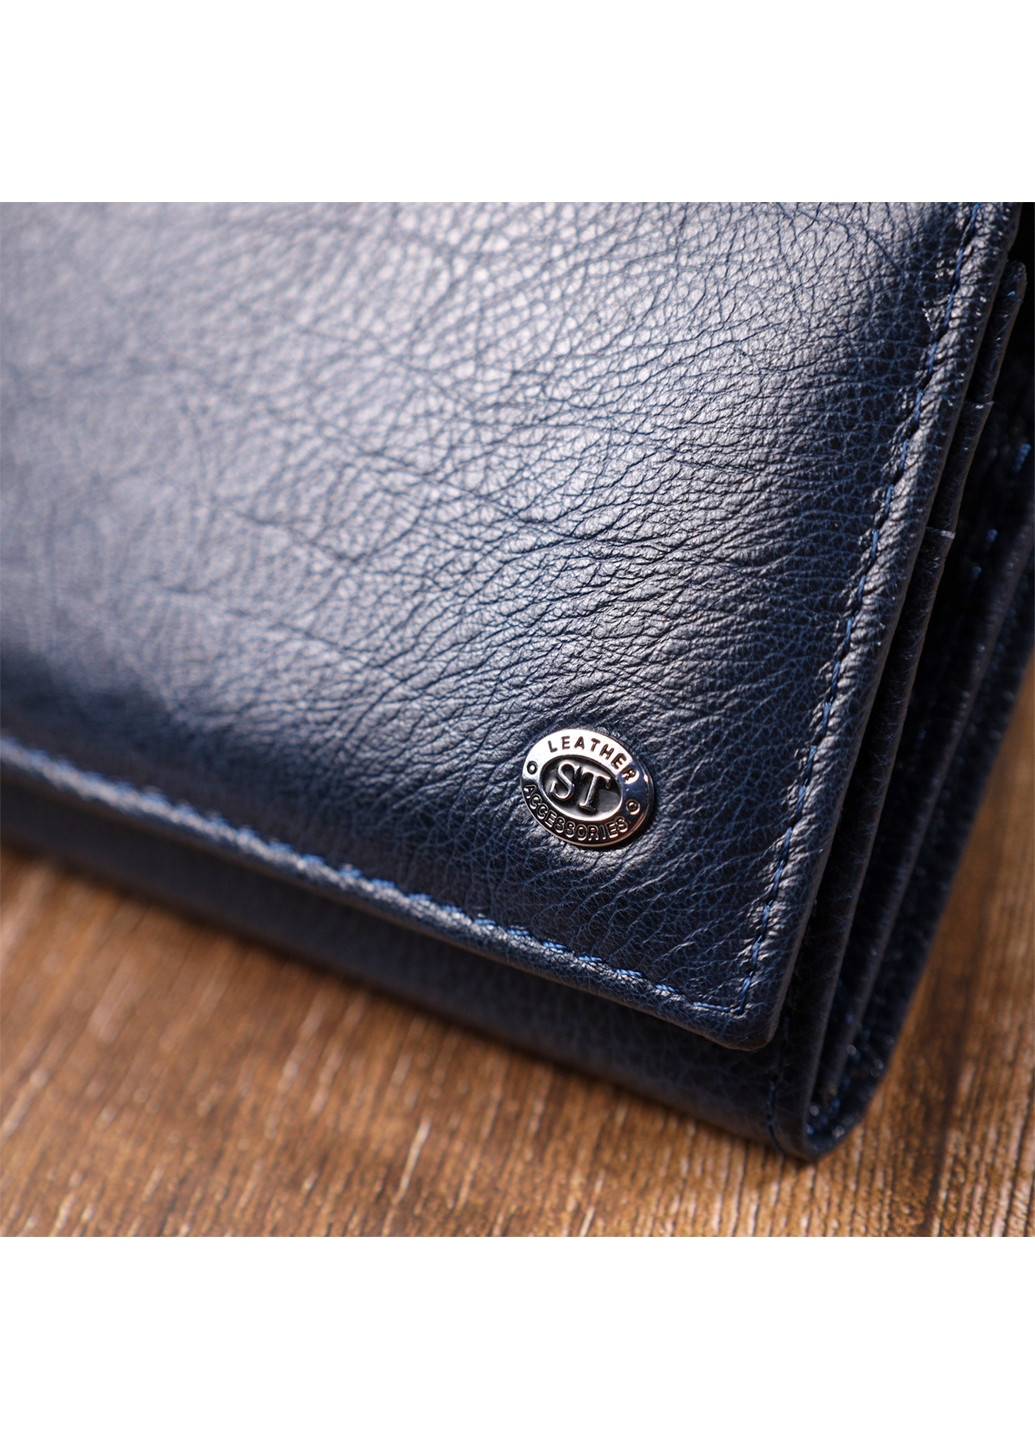 Кожаный женский кошелек st leather (276982031)